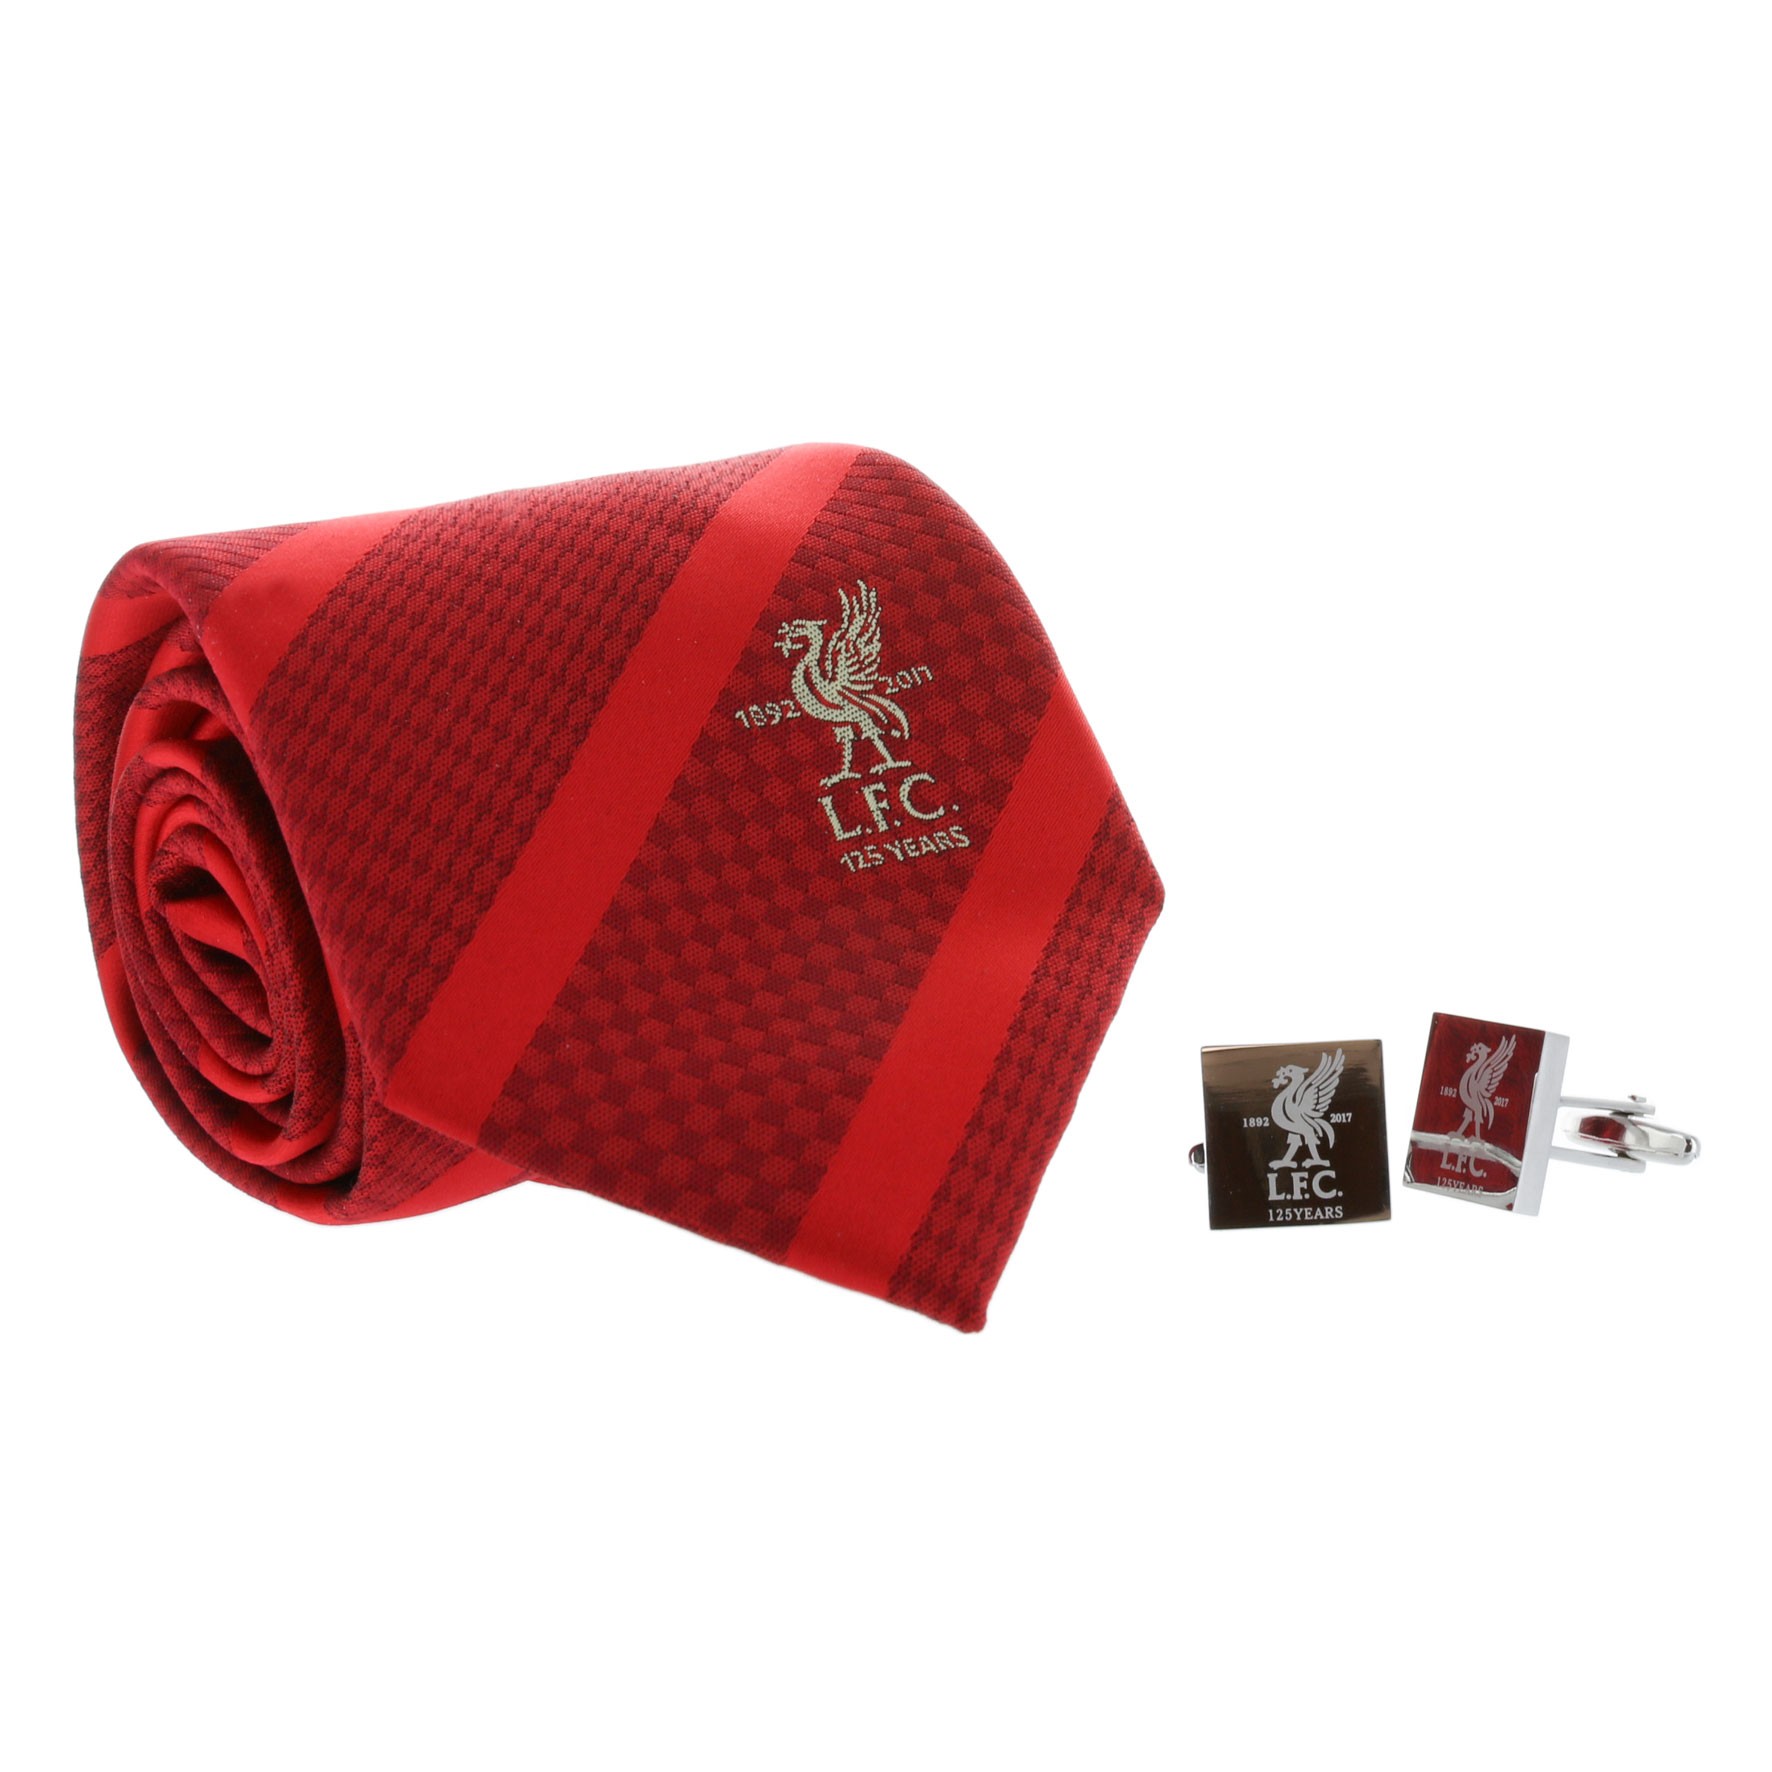 LFC 125 Boxed Tie